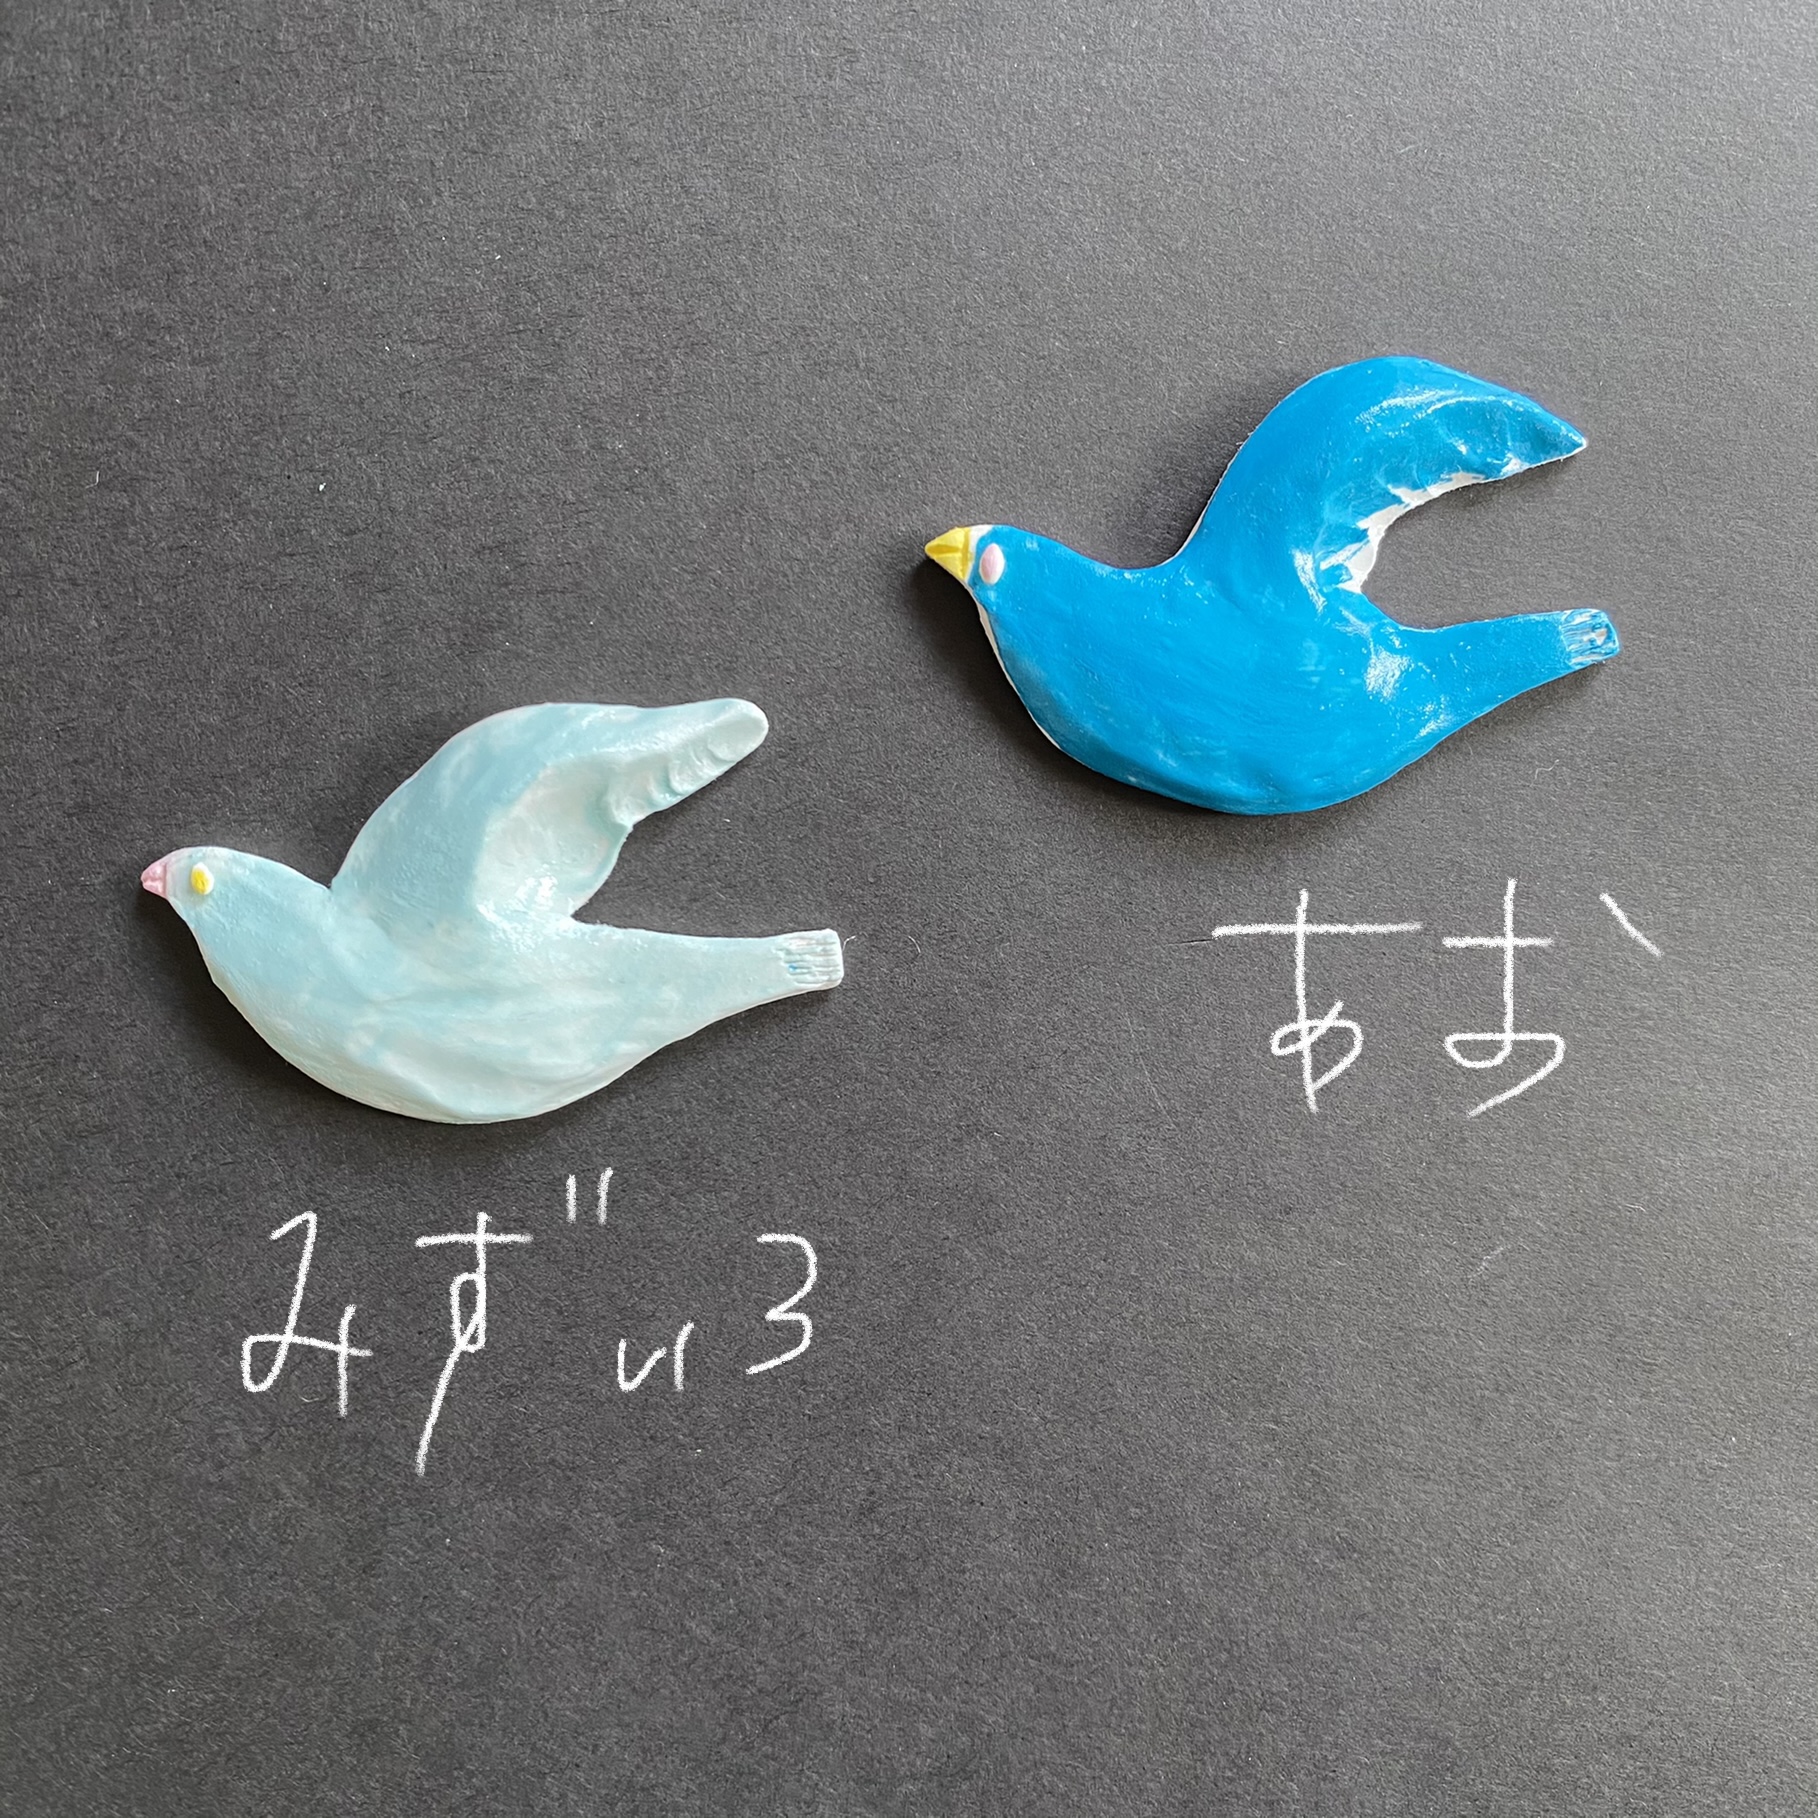 青い鳥のブローチ Iichi ハンドメイド クラフト作品 手仕事品の通販